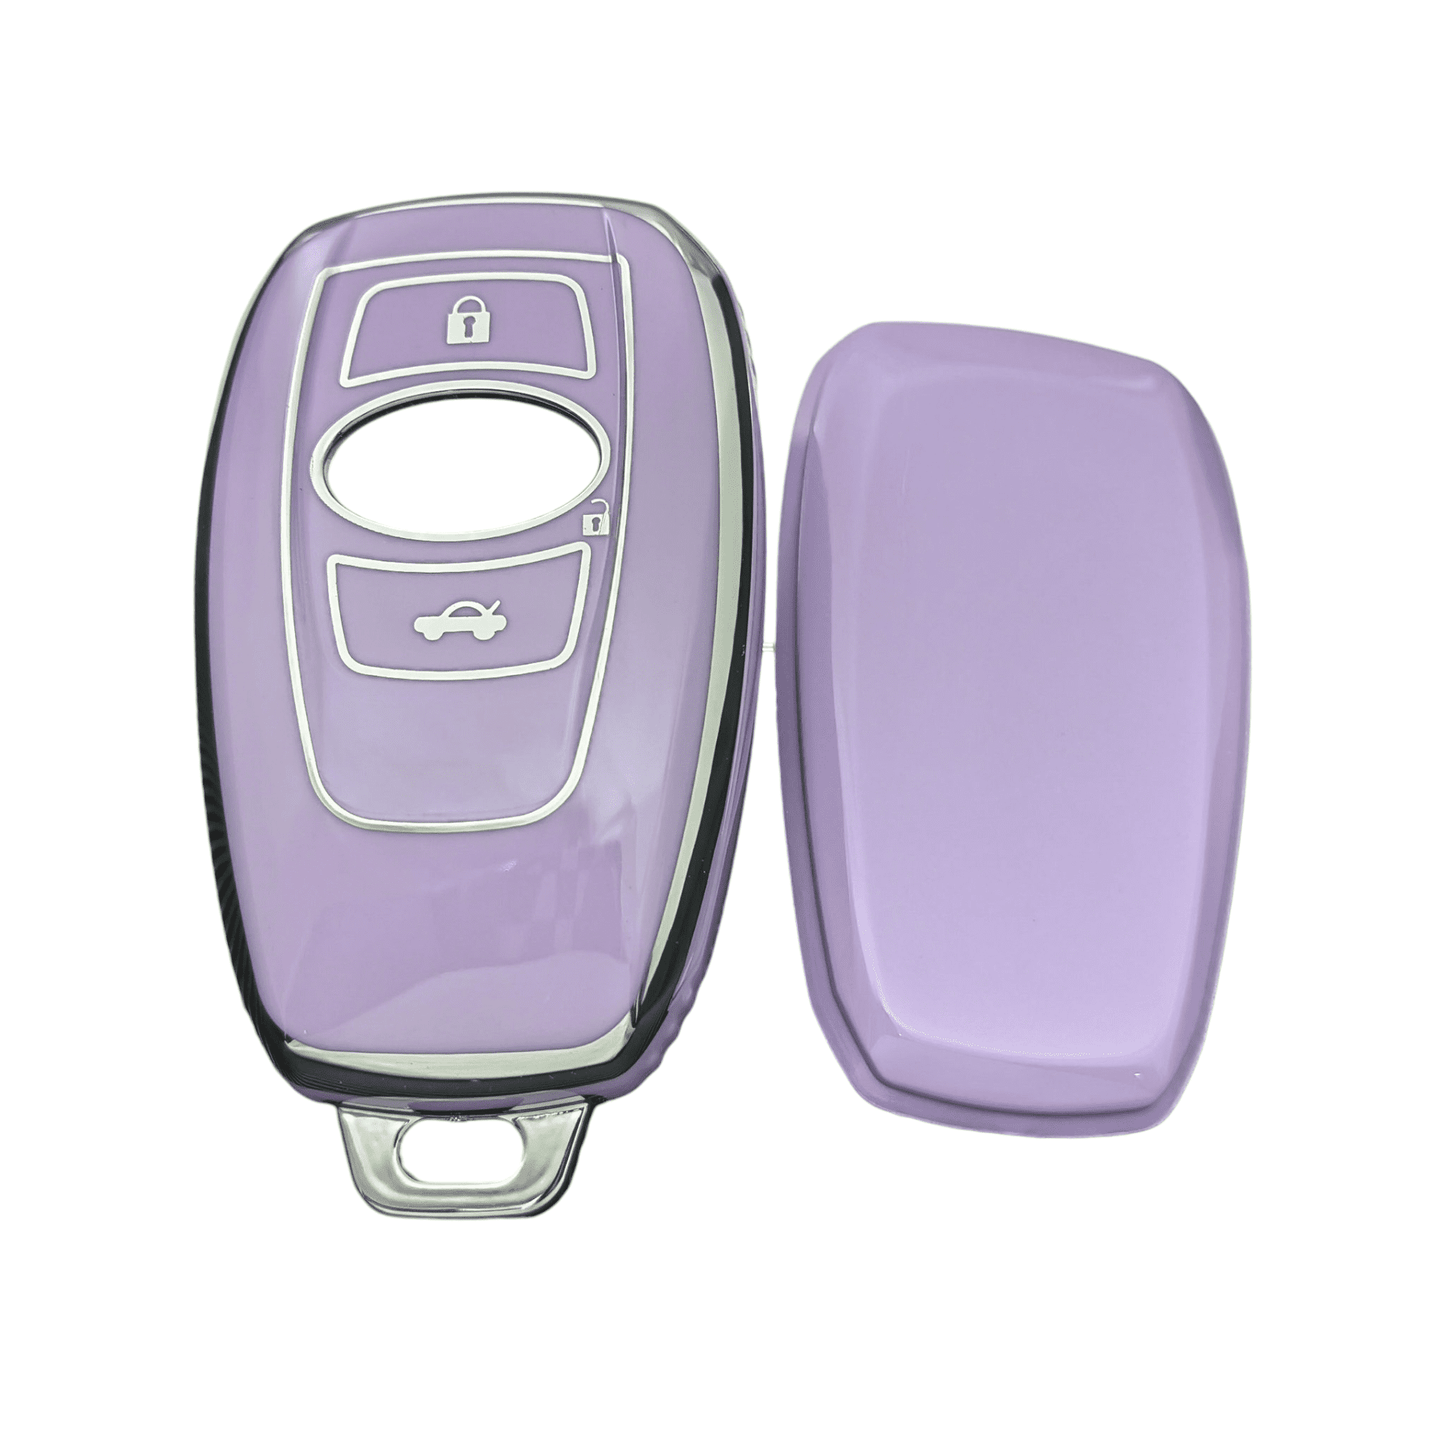 Subaru Key Cover - 3 button | Impreza WRX STI, XV, Forester car key case | Subaru Accessories